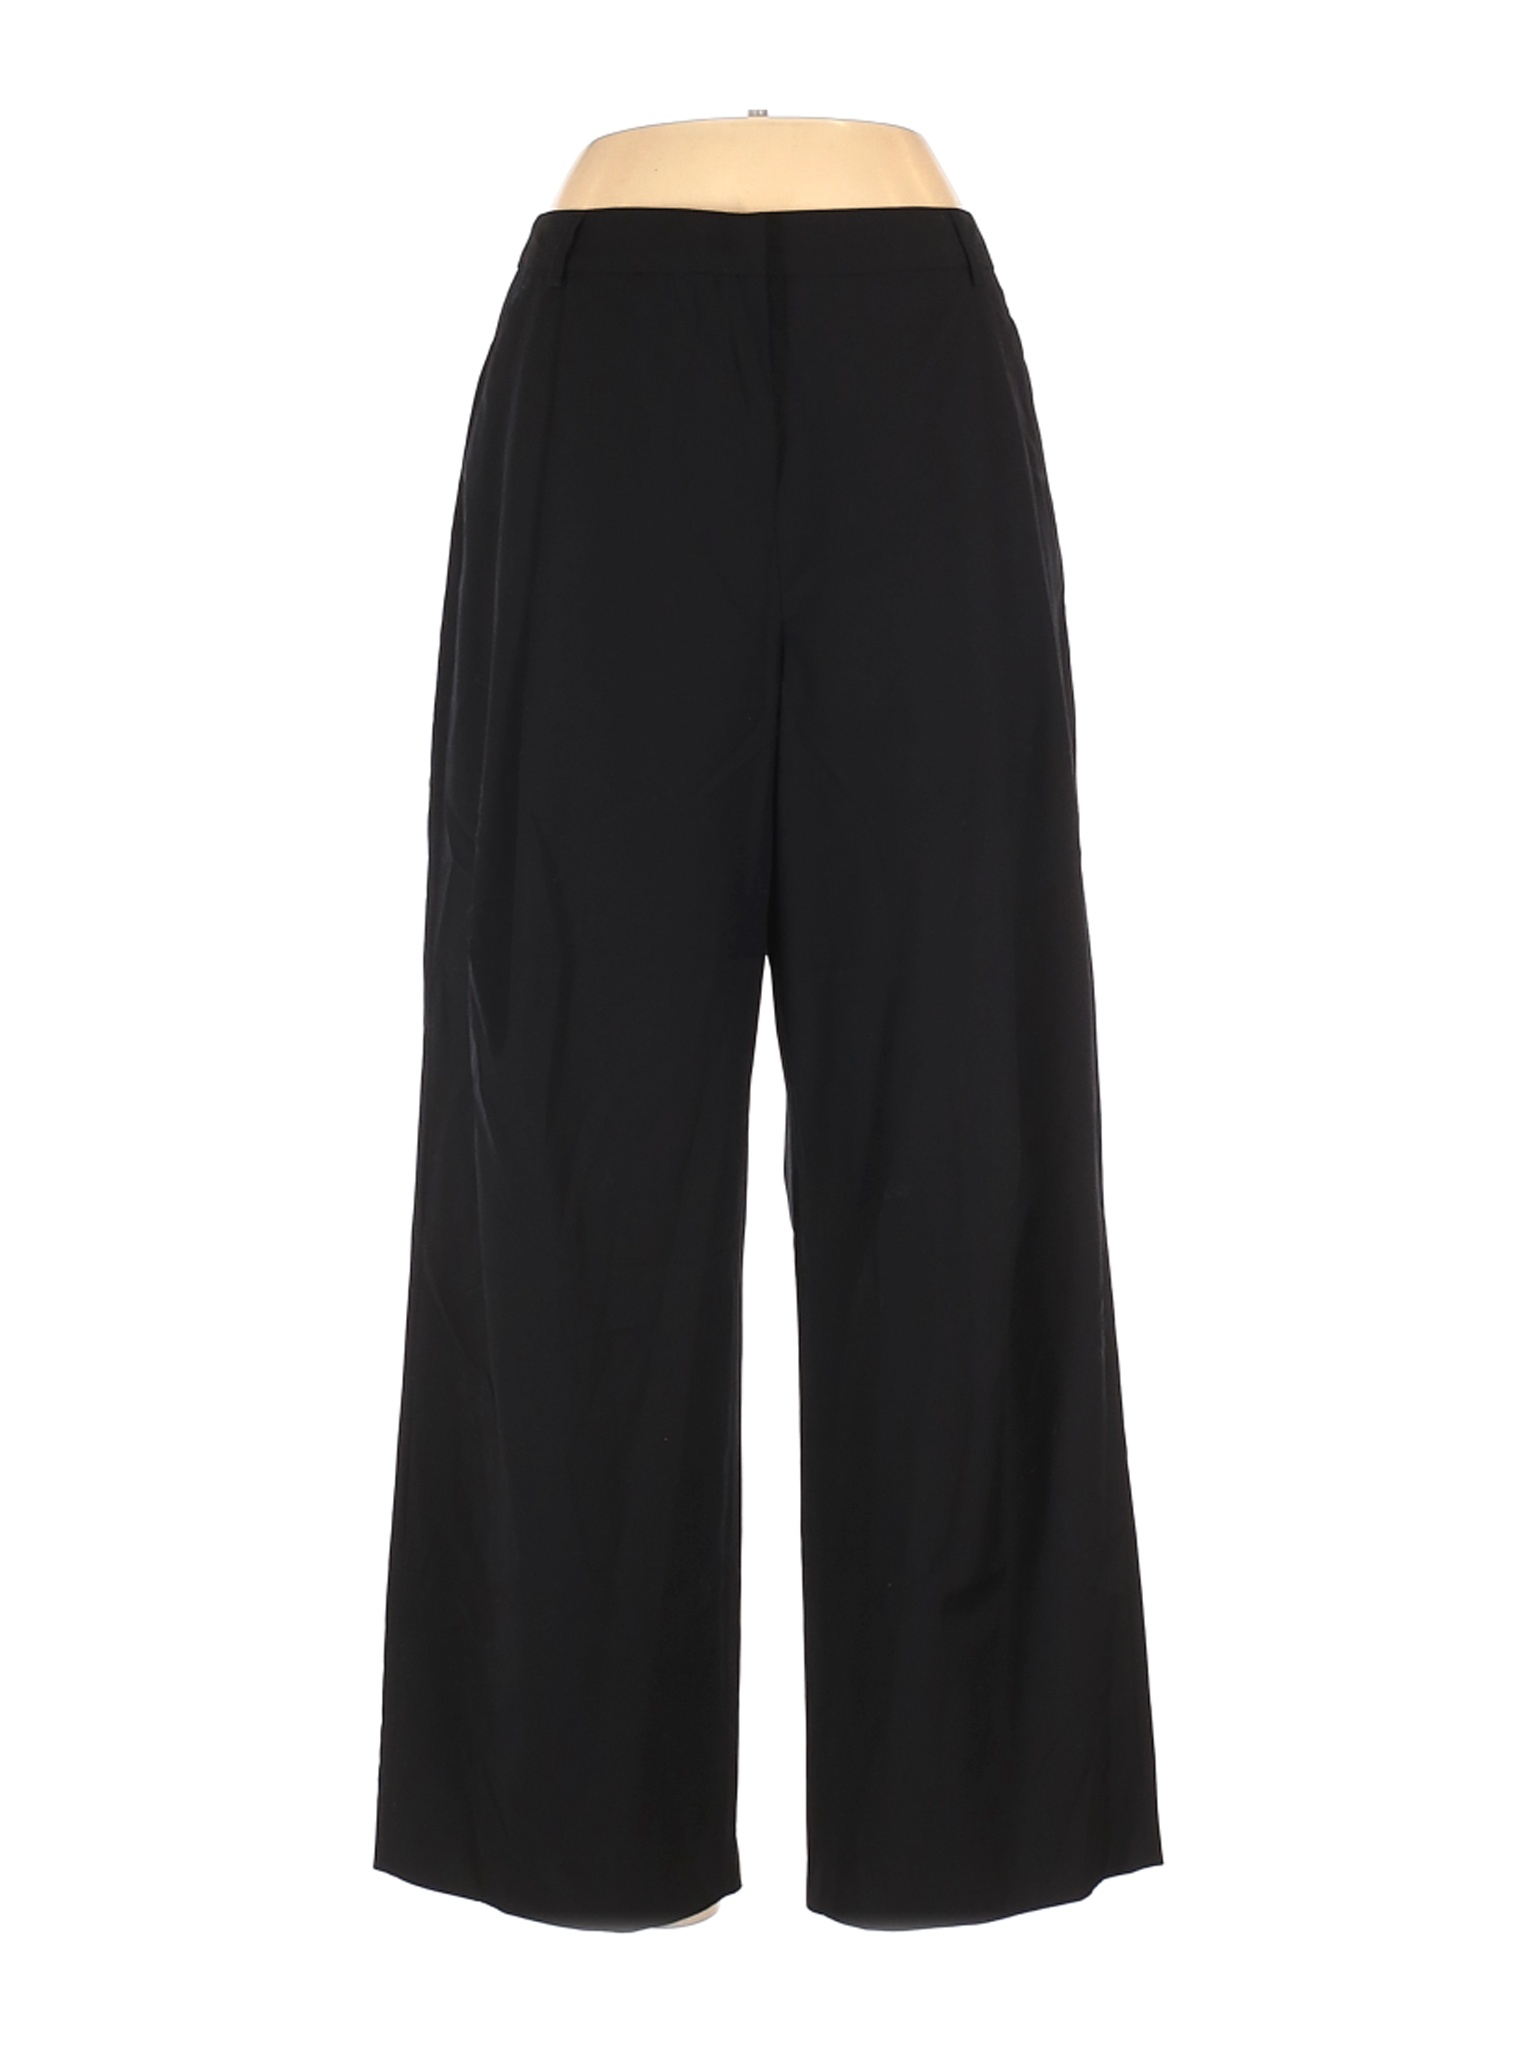 Jarbo Women Black Wool Pants 40 eur | eBay